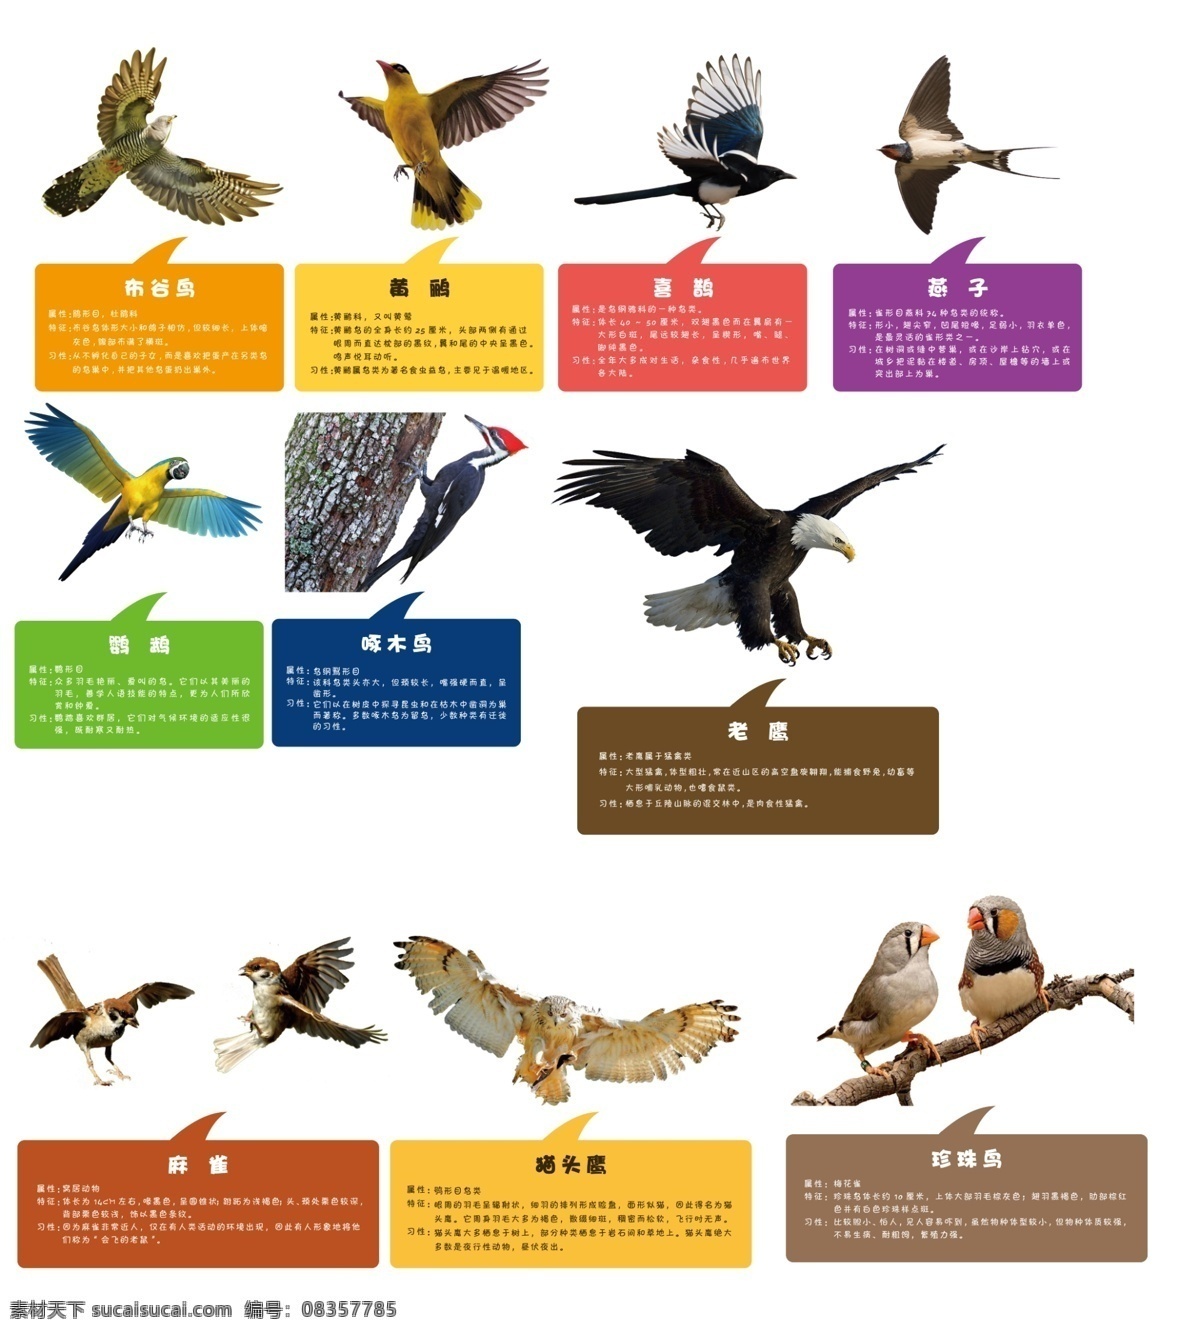 鸟的介绍 鸟 介绍 布谷鸟 黄鹂 喜鹊 燕子 鹦鹉 啄木鸟 树牌 老鹰